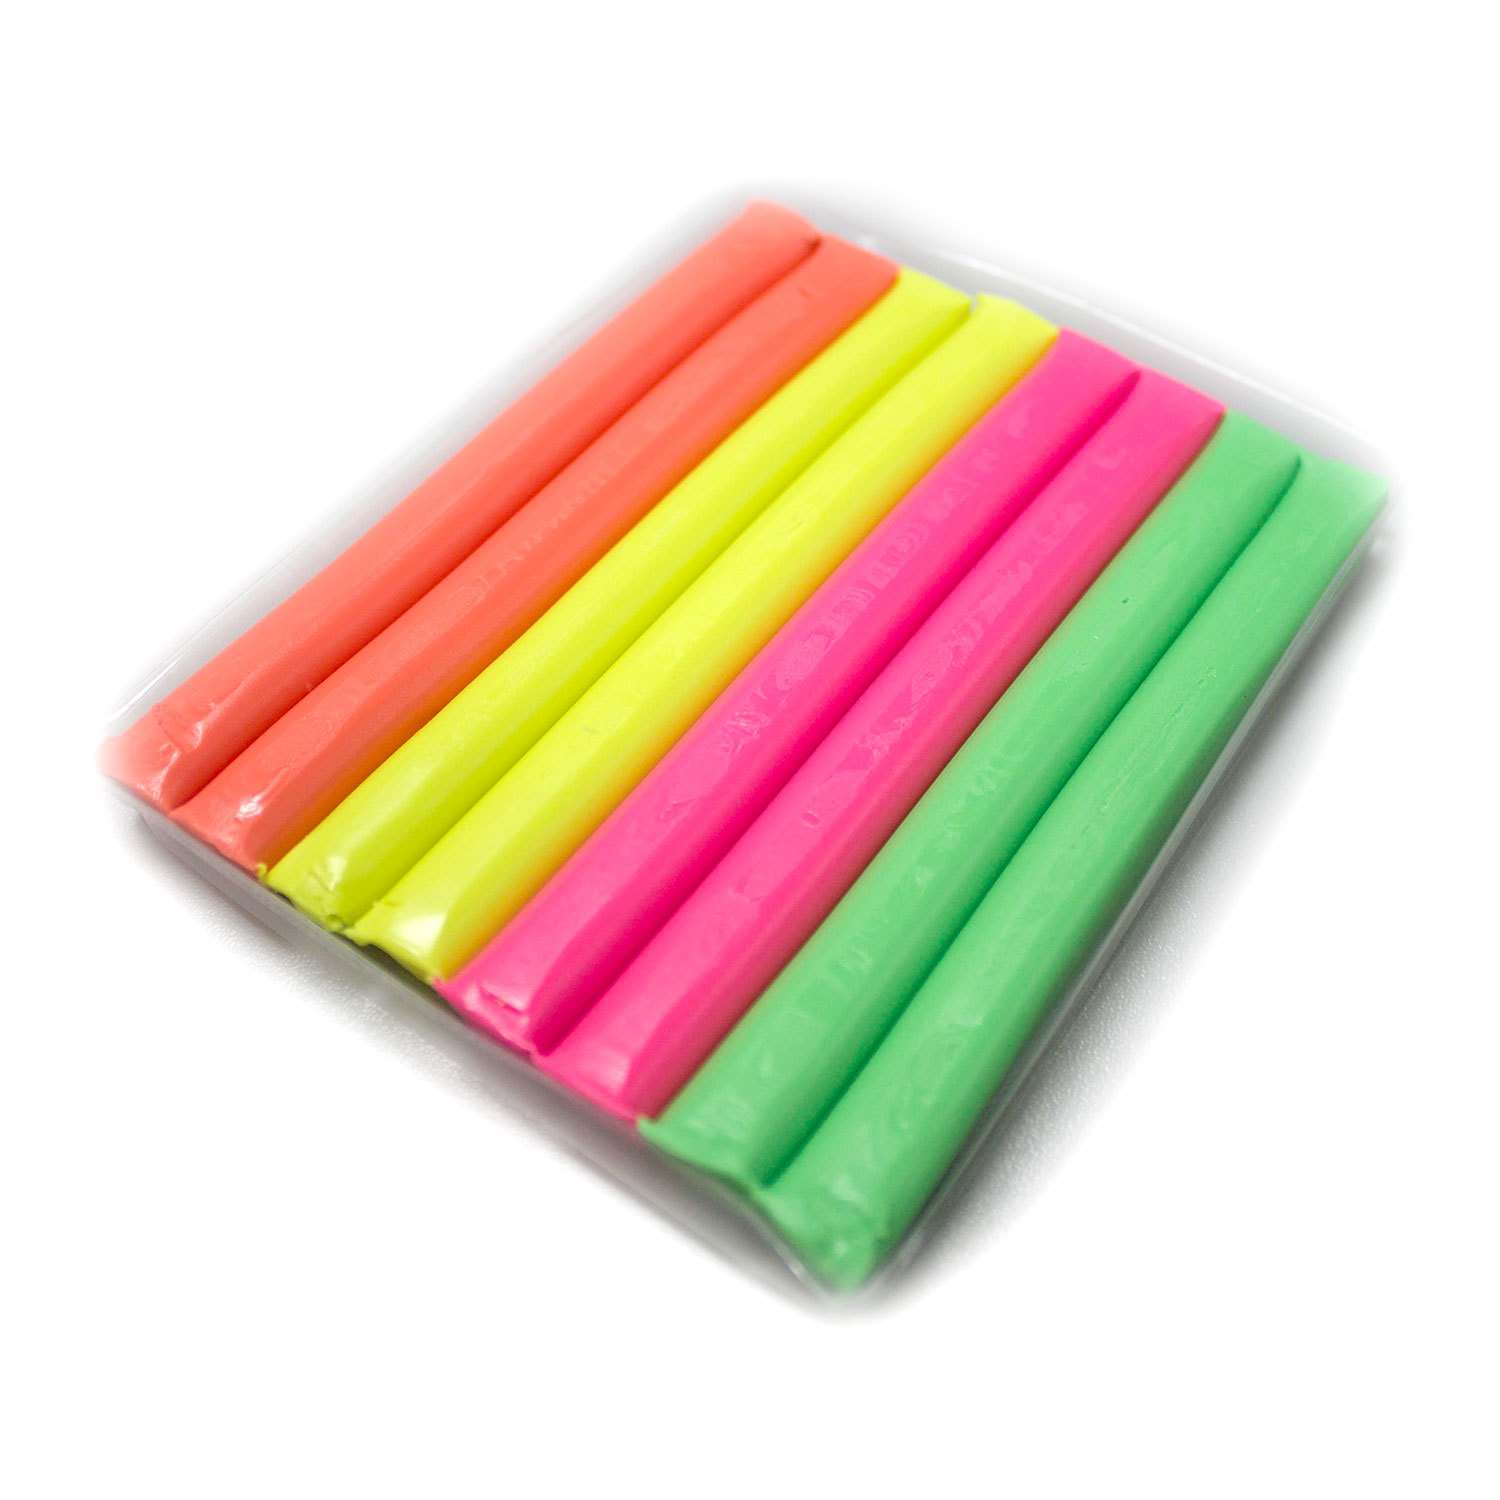 Пластилин Crayola Незасыхающий 8 шт в ассортименте - фото 3